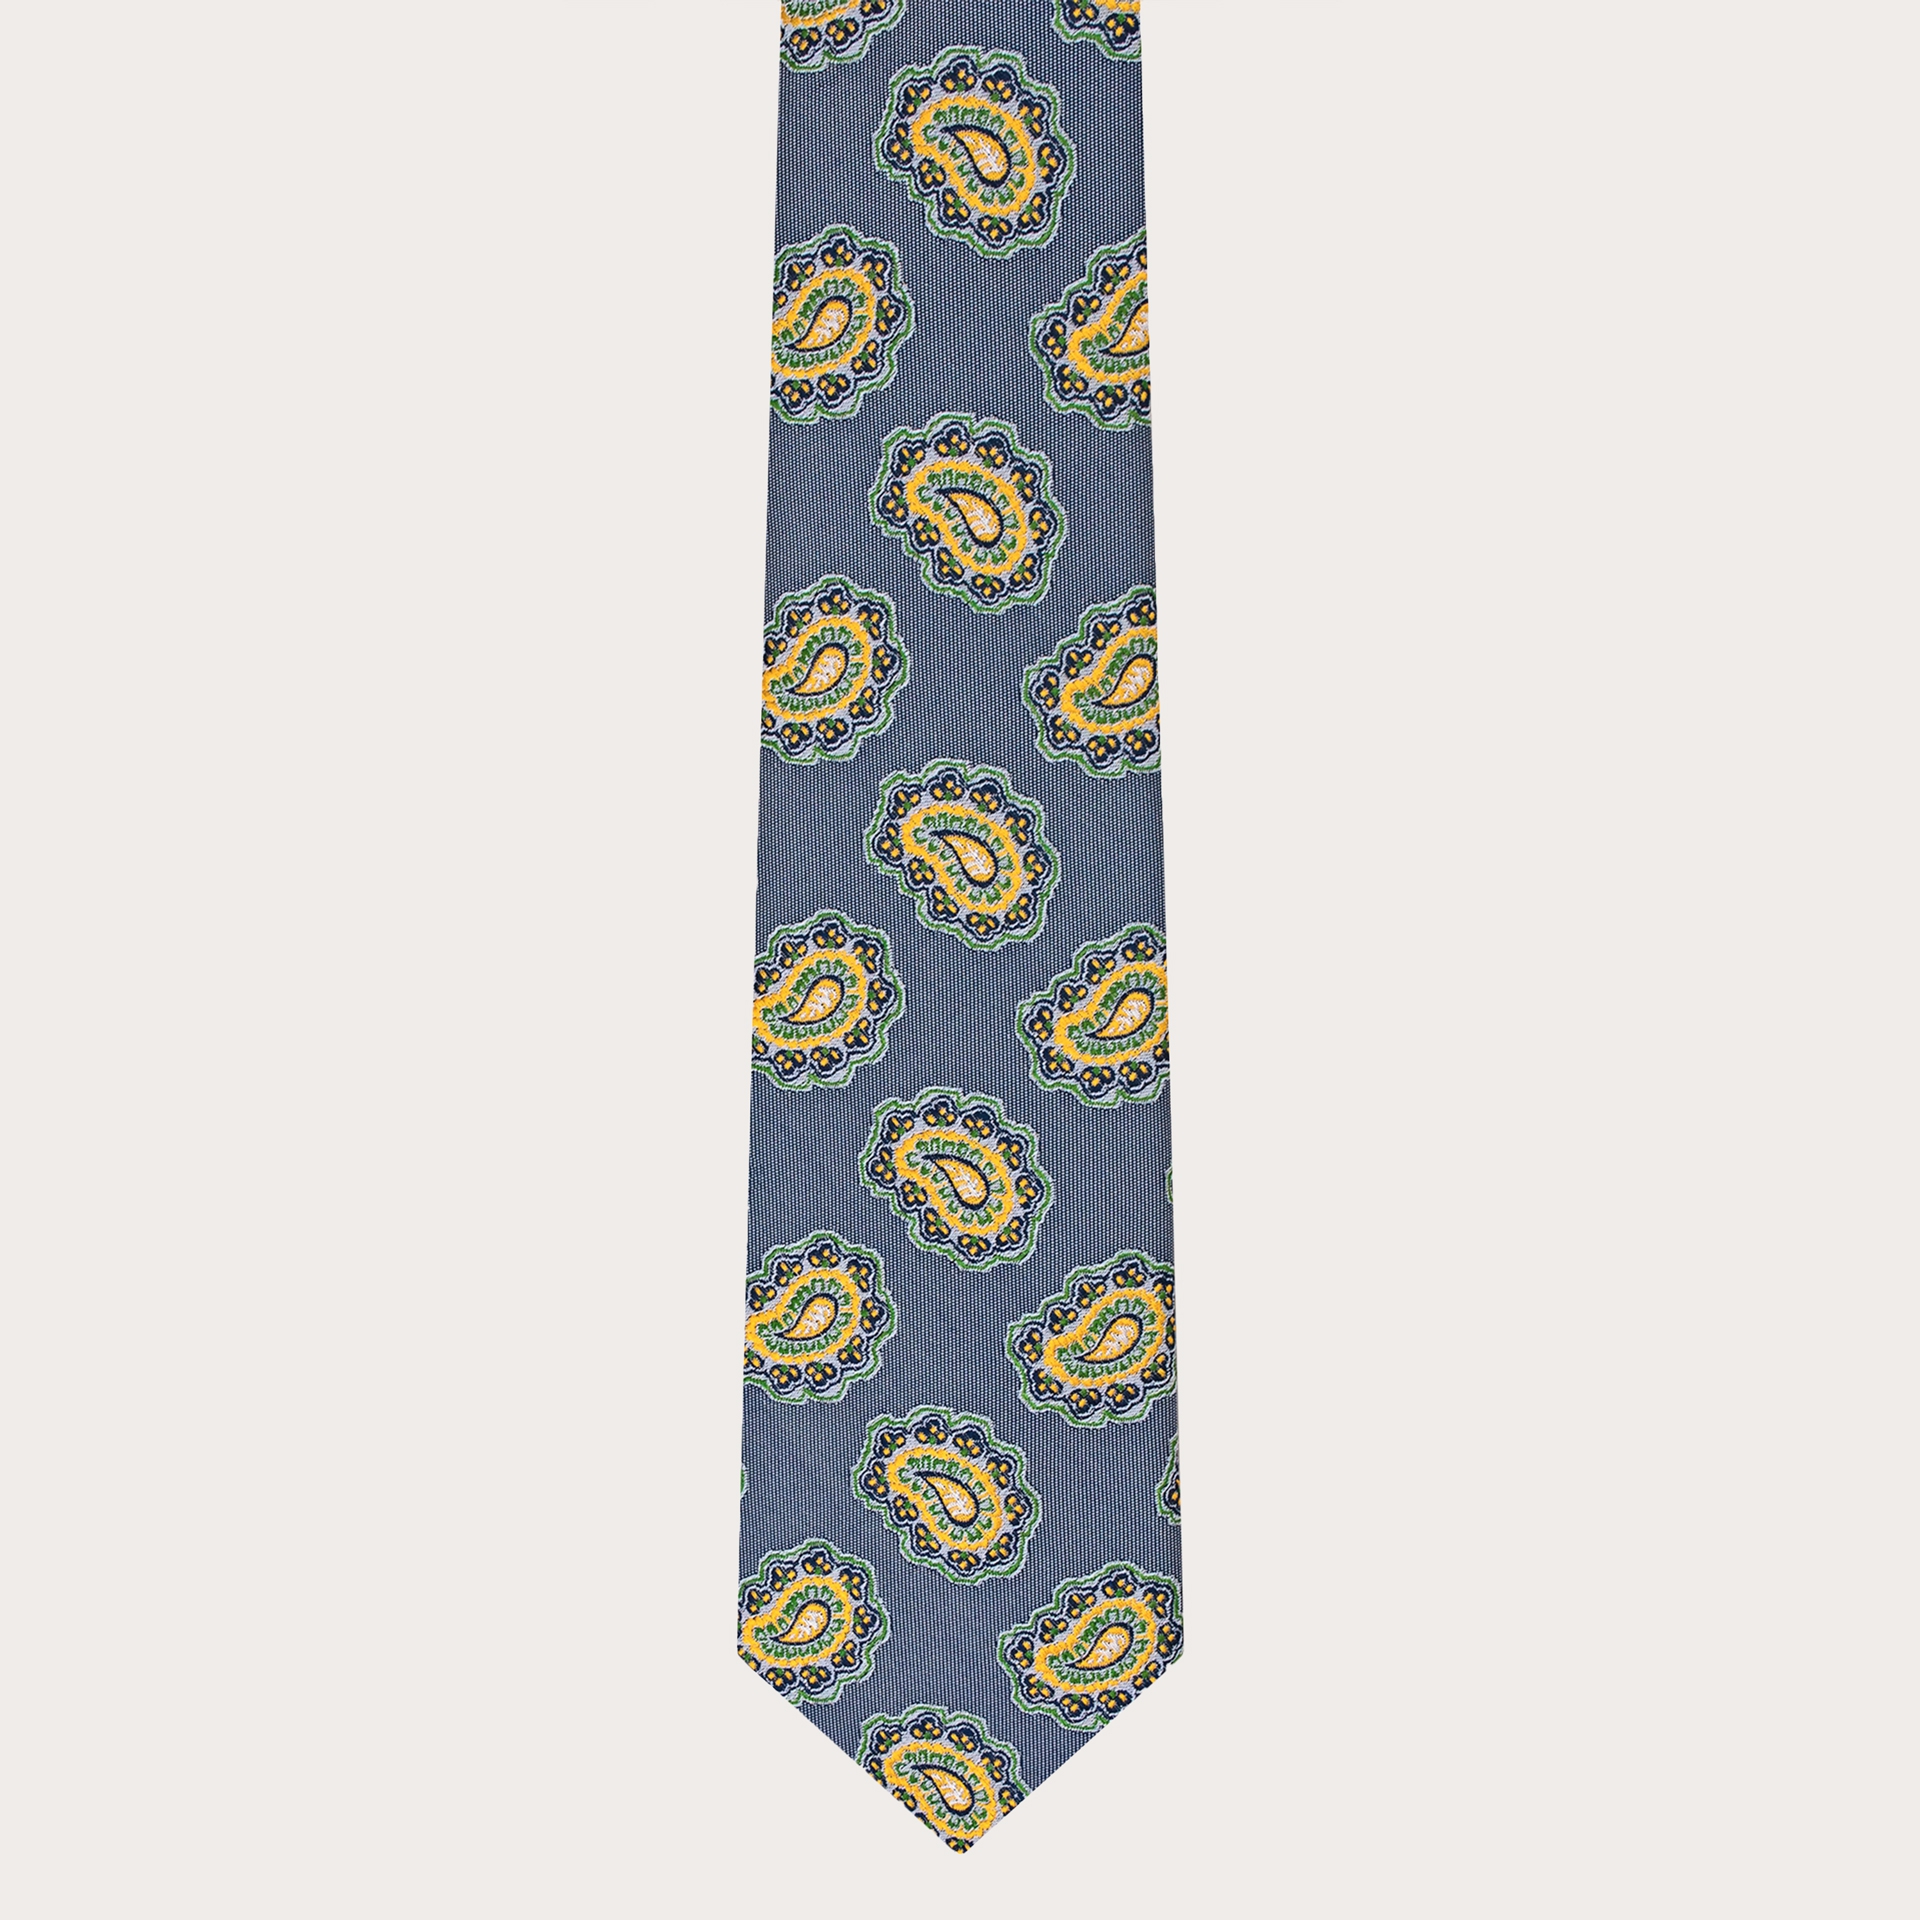 Cravate bleue macro cachemire en soie jacquard